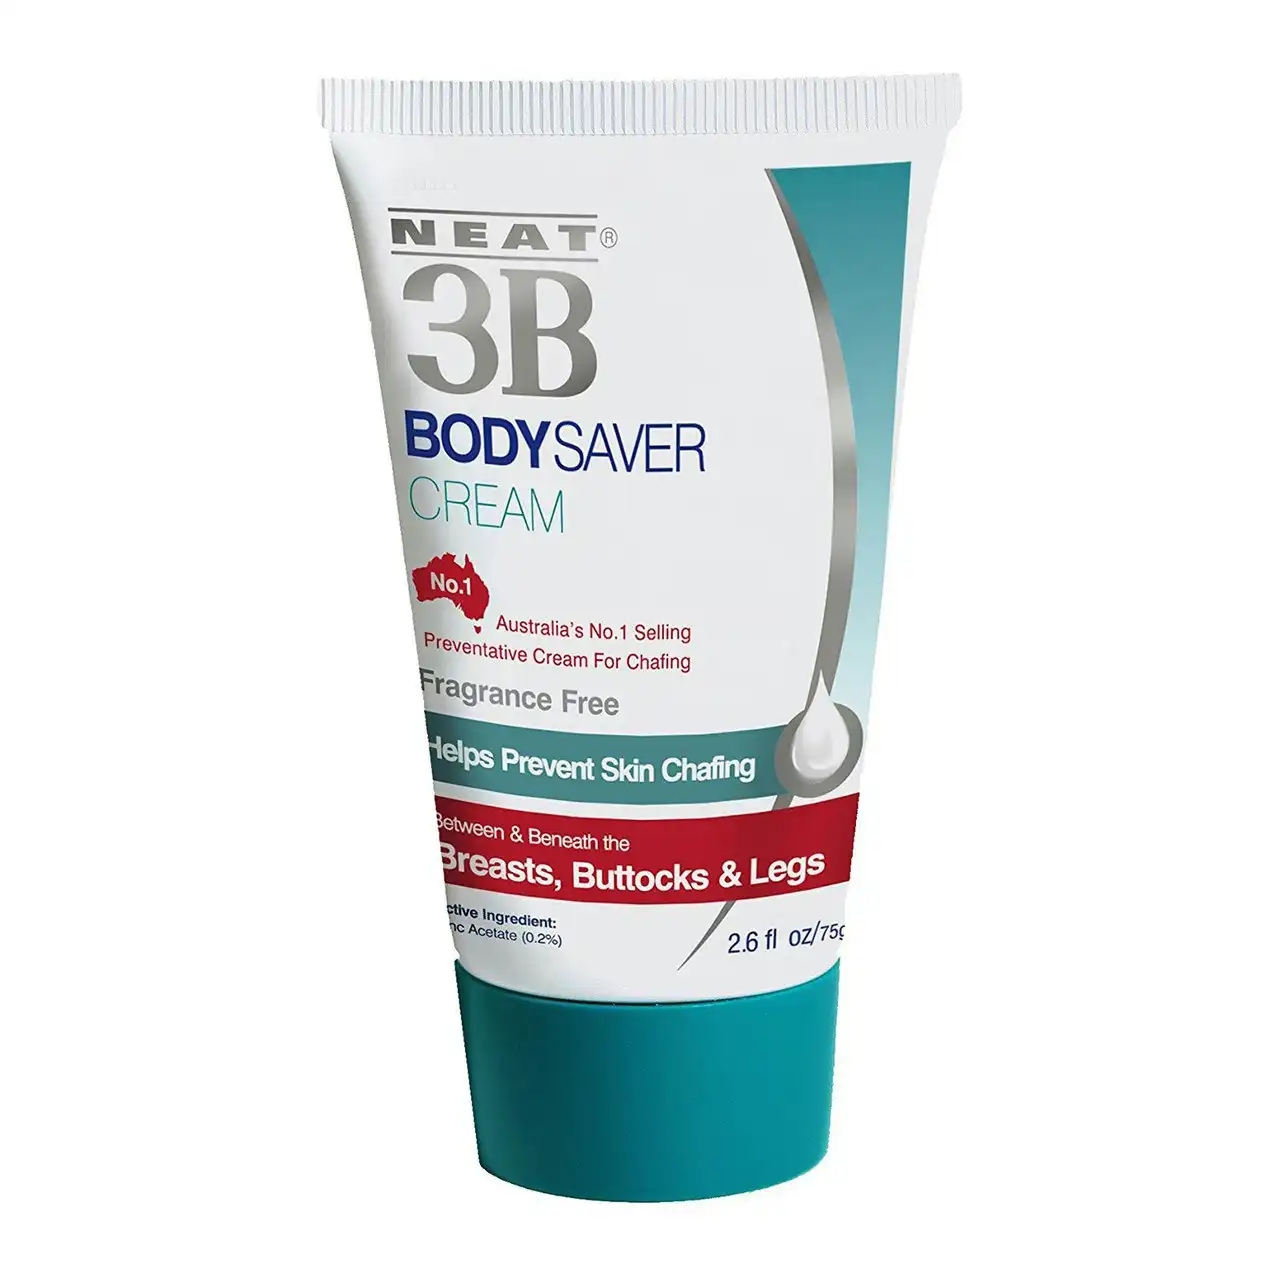 NEAT 3B Body Saver Cream 75g